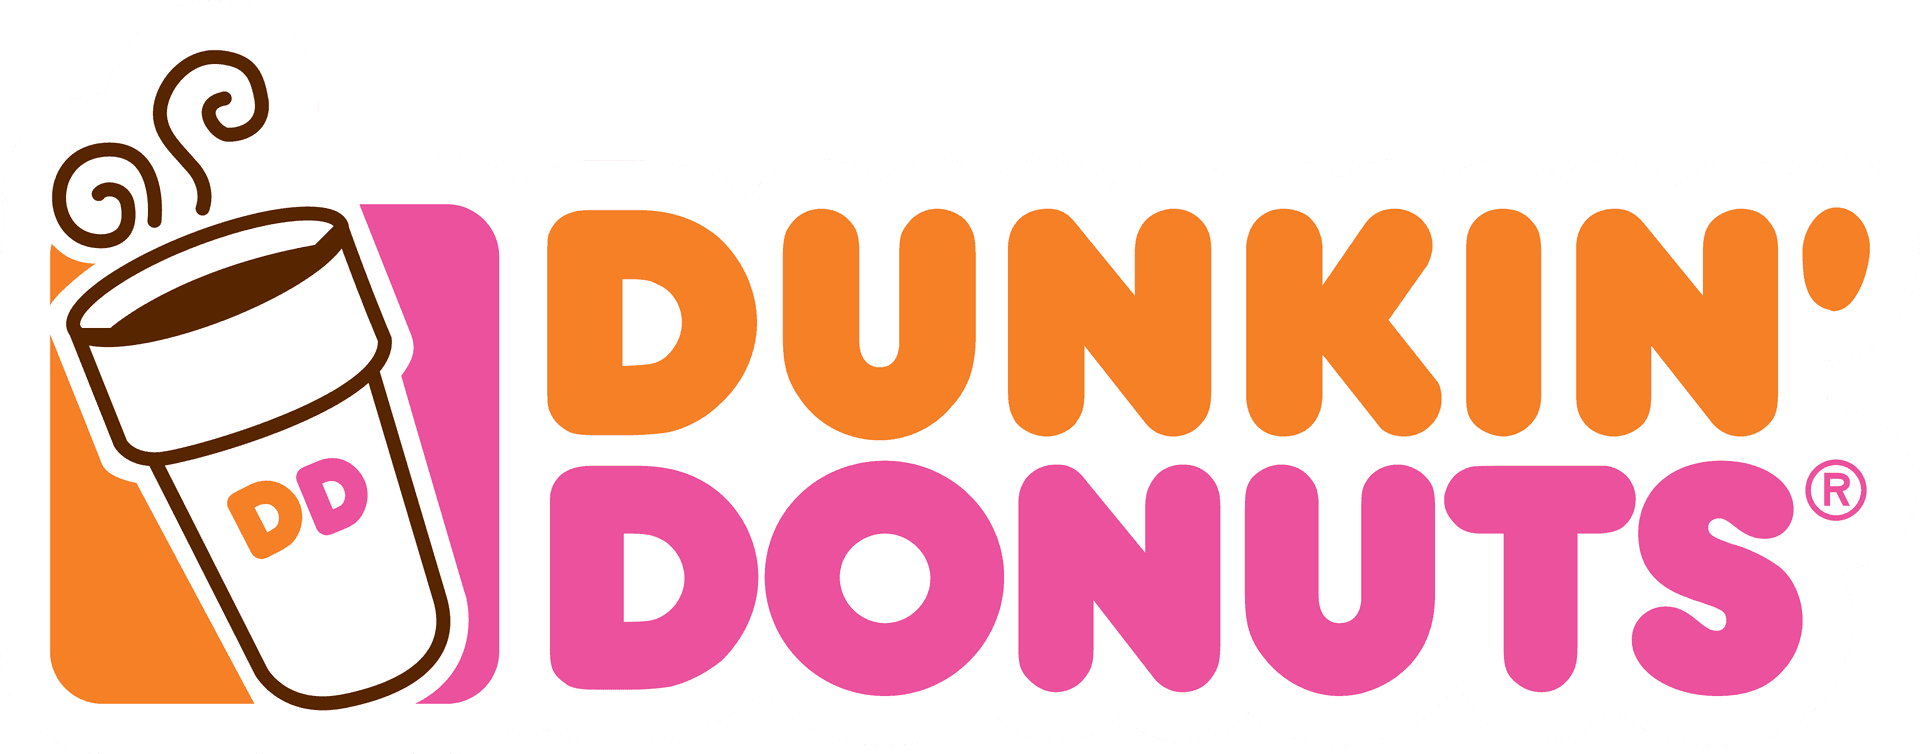 Deliziosamentedeliziosi Dunkin Donuts!